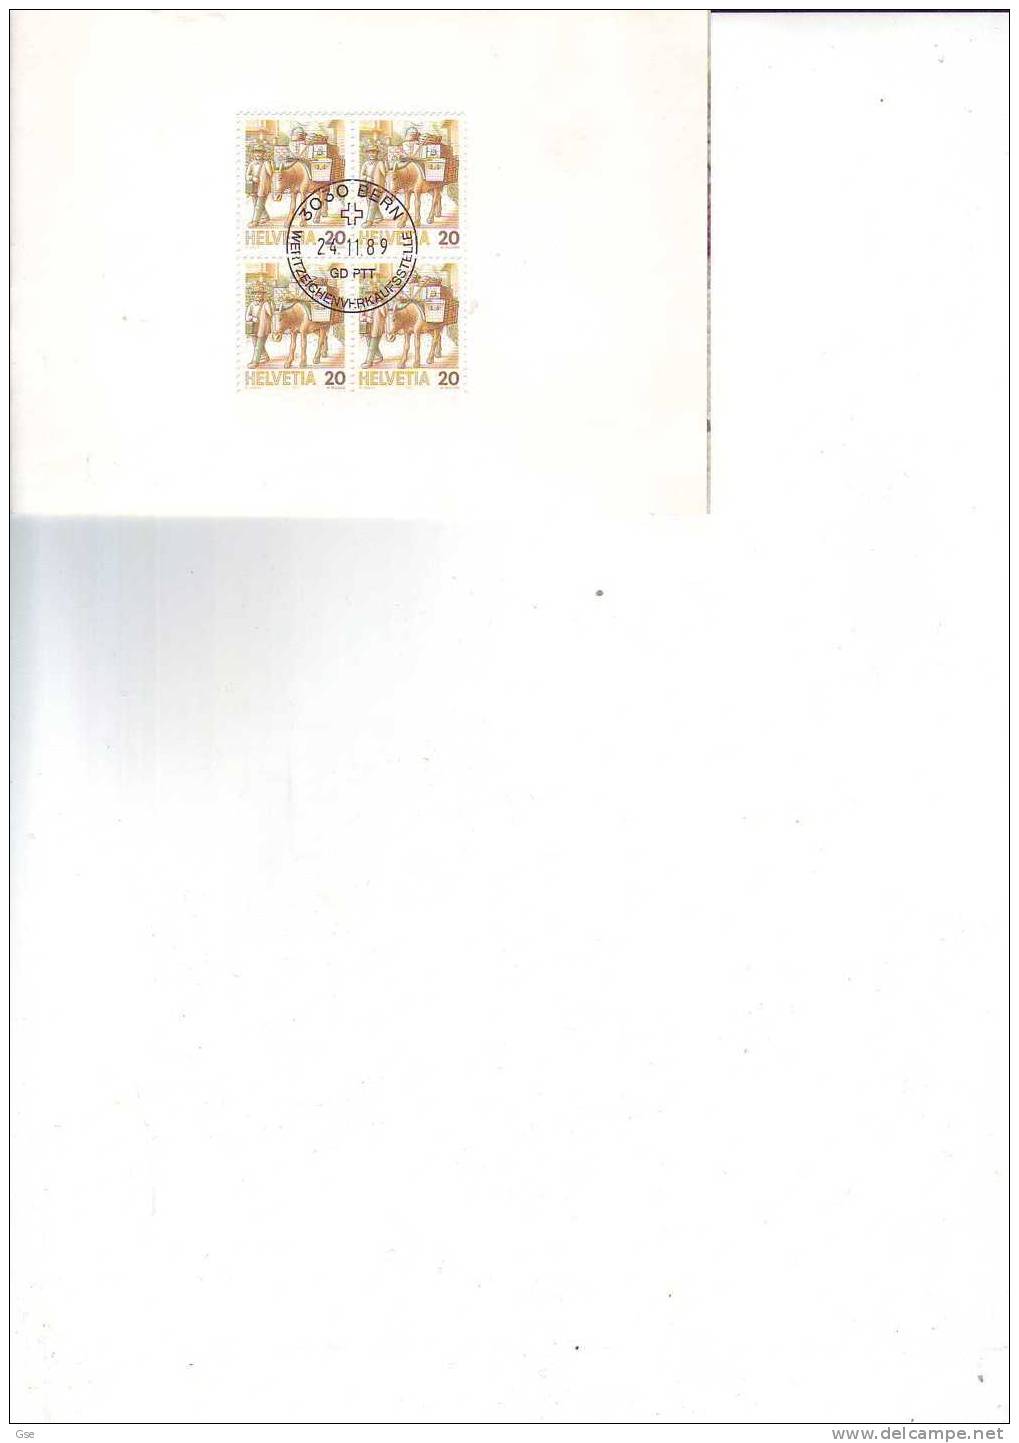 SVIZZERA 1989 - Yvert  1264 (x4) - Cartoncino Con Annullo Speciale  Illustrato - Servizi Postali - Burros Y Asnos